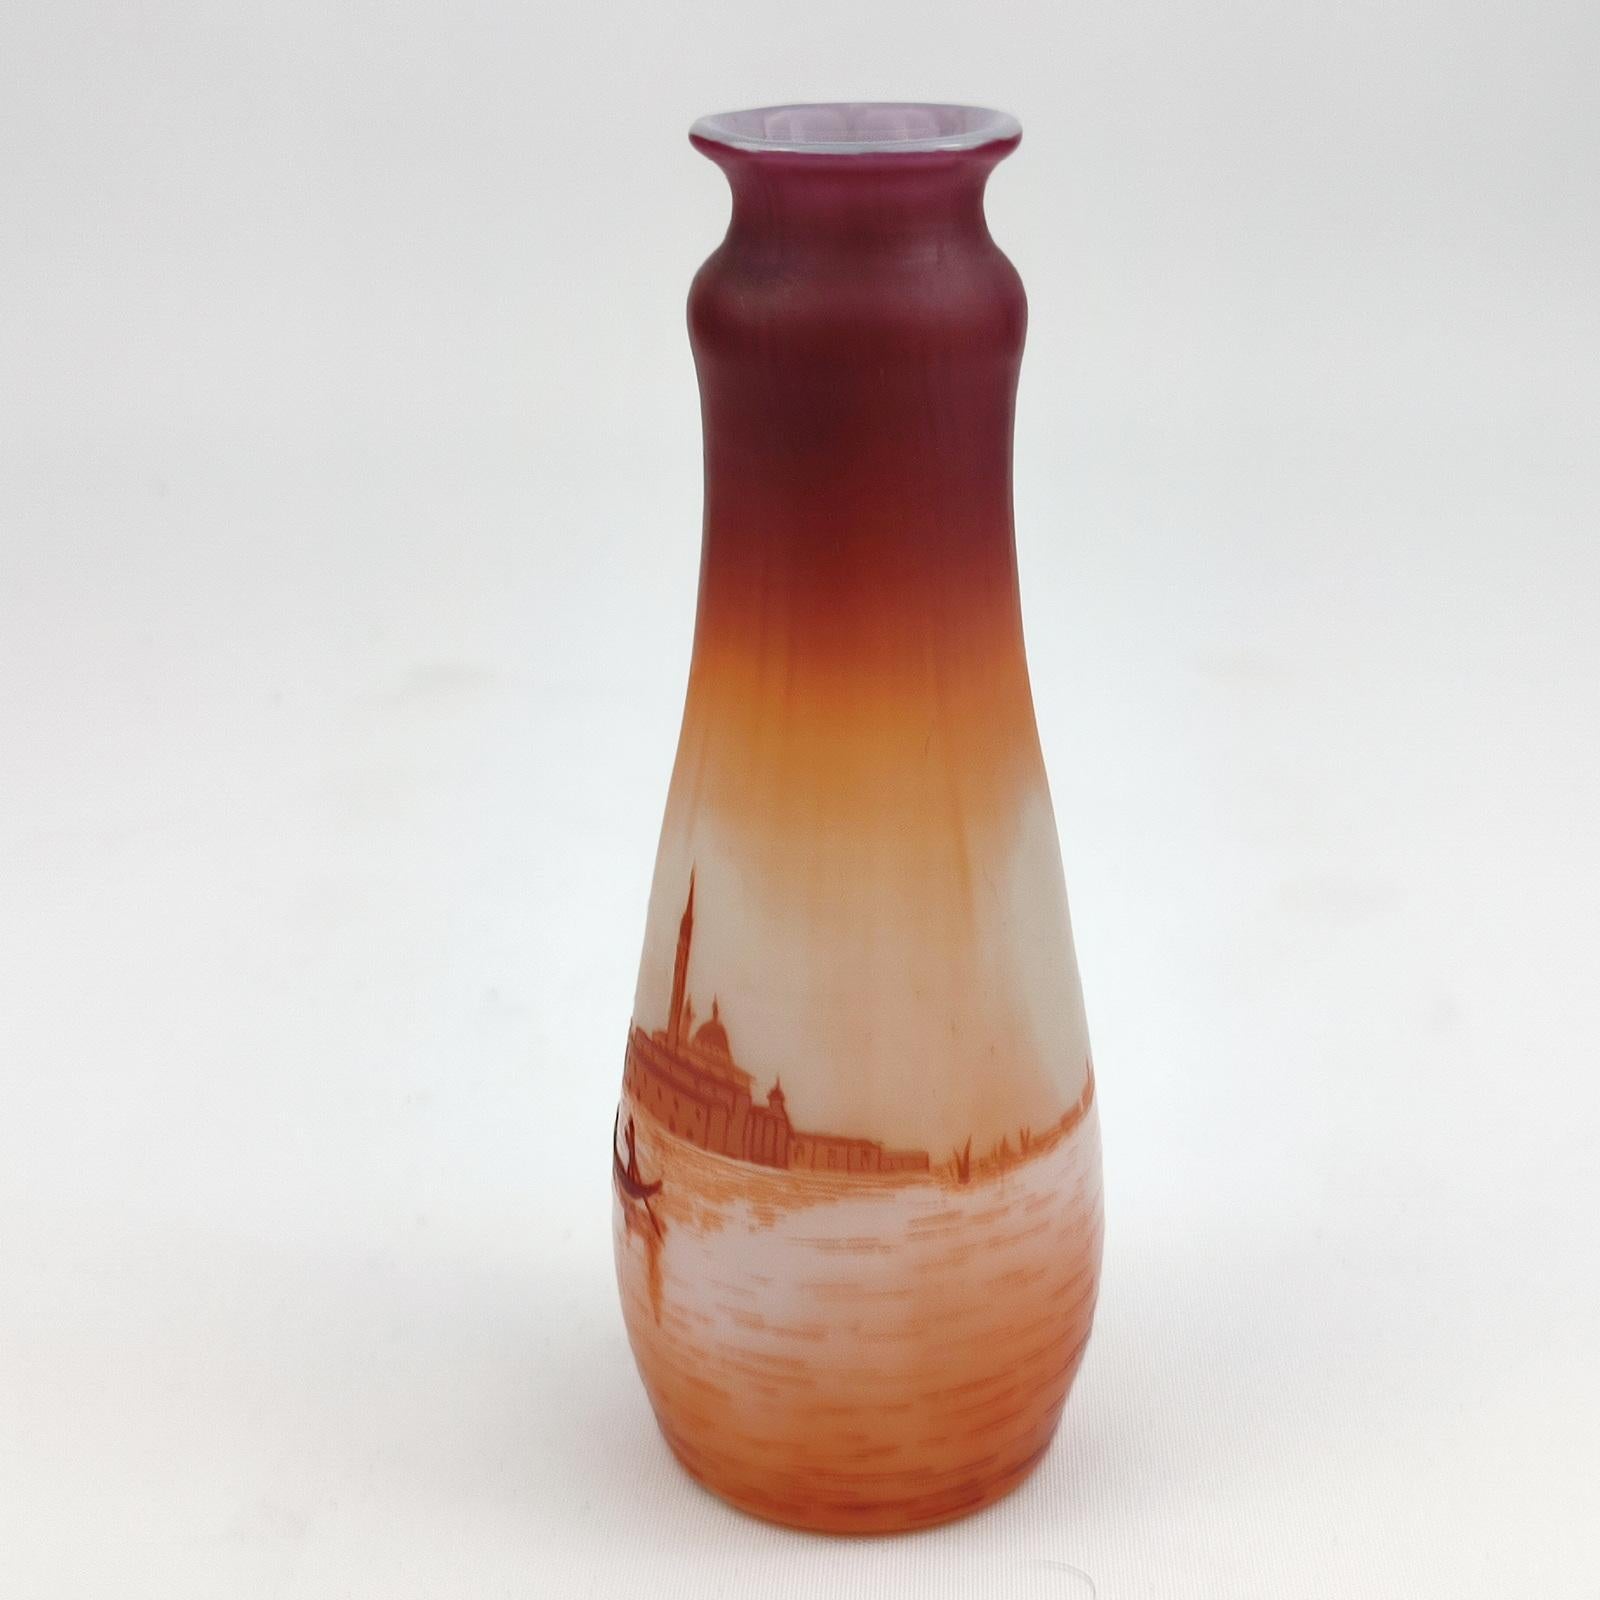 Etched Art Nouveau D'Argental Cameo Glass Vase with Venice Landscape For Sale